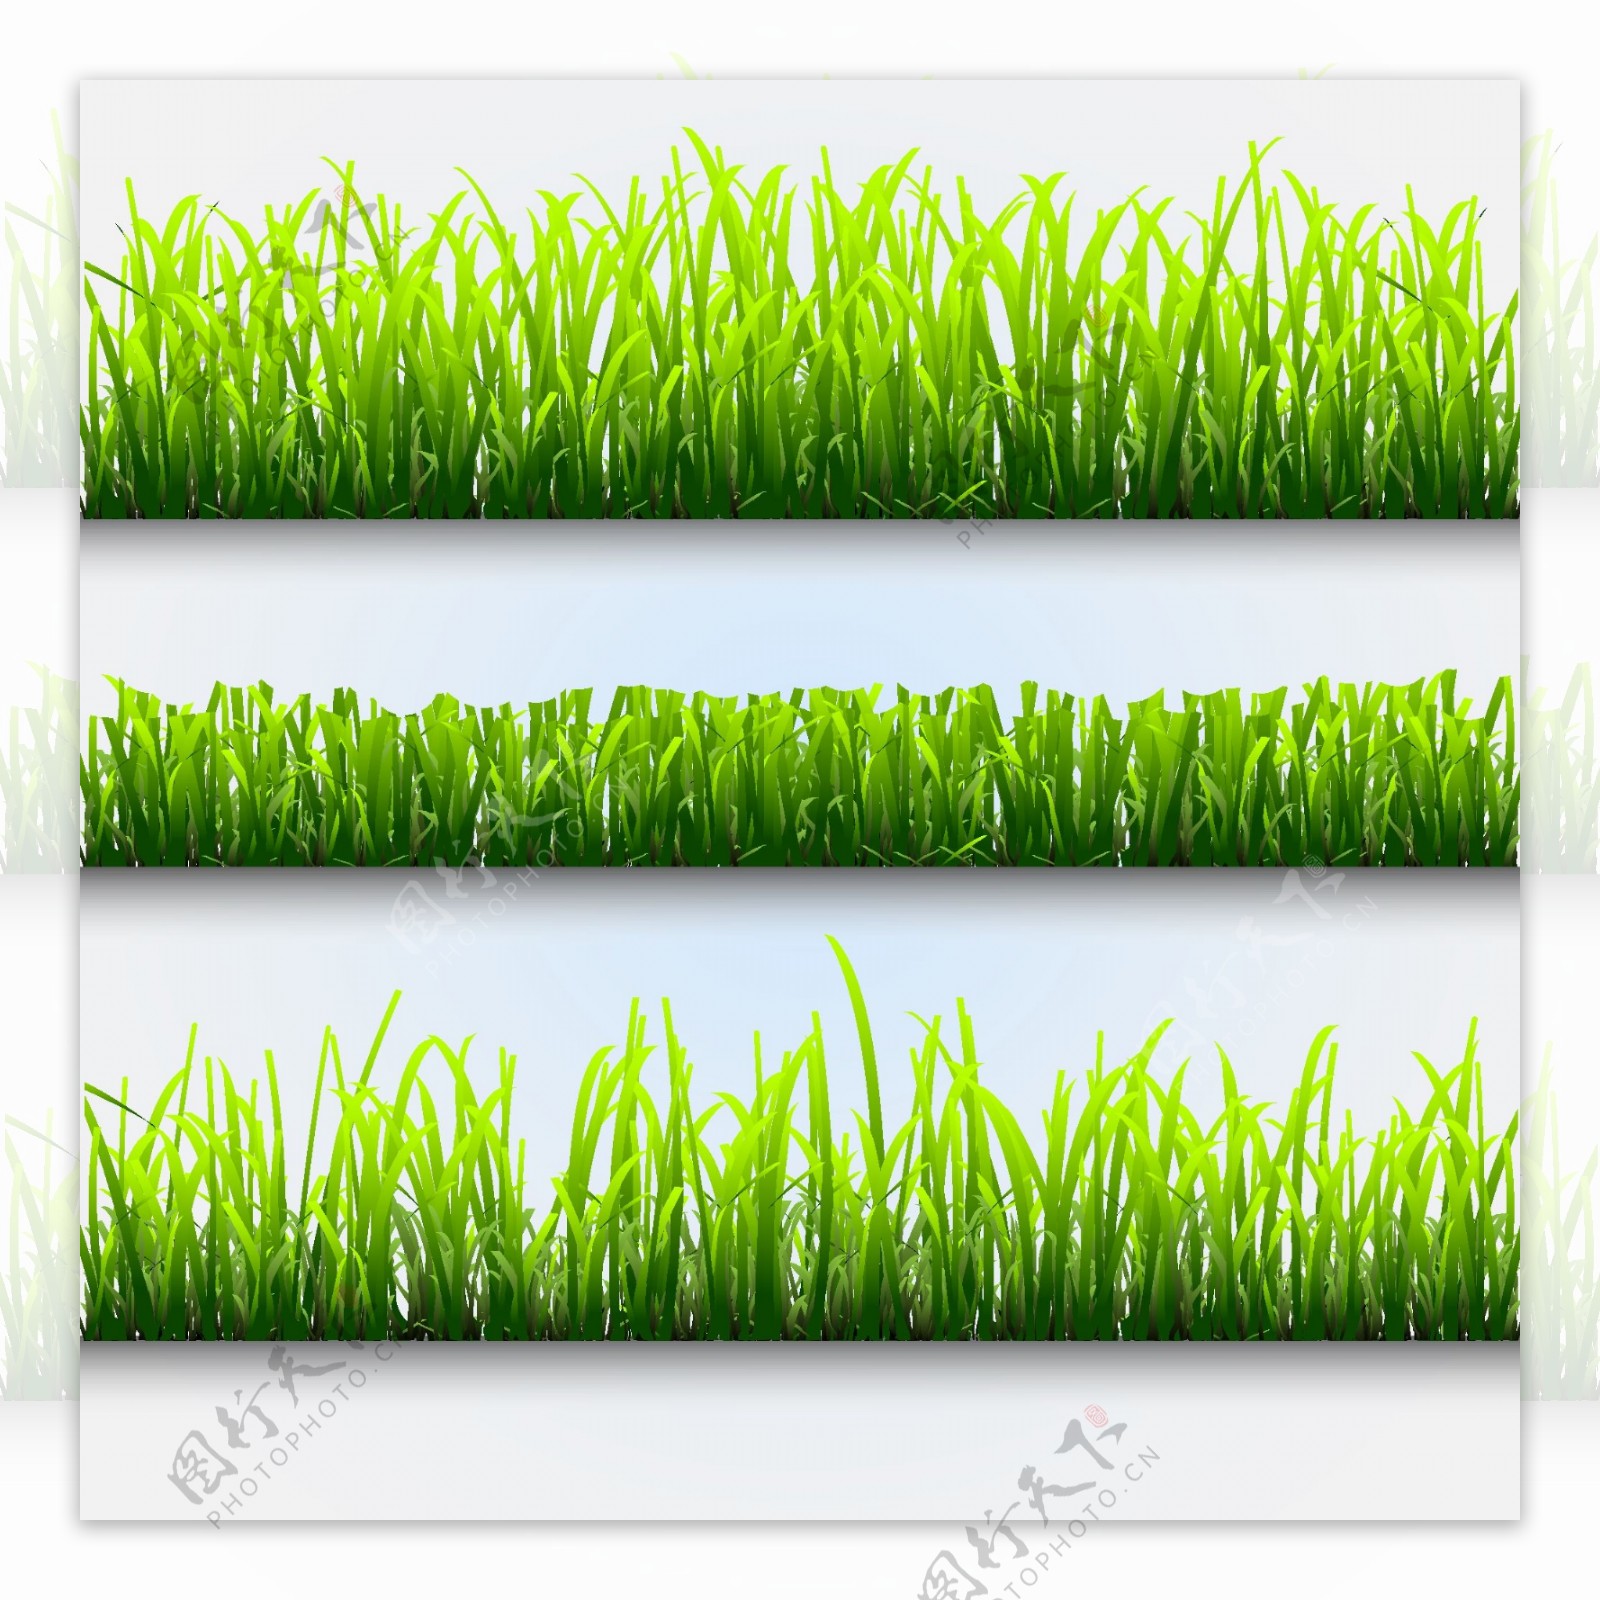 清爽绿色草坪矢量图